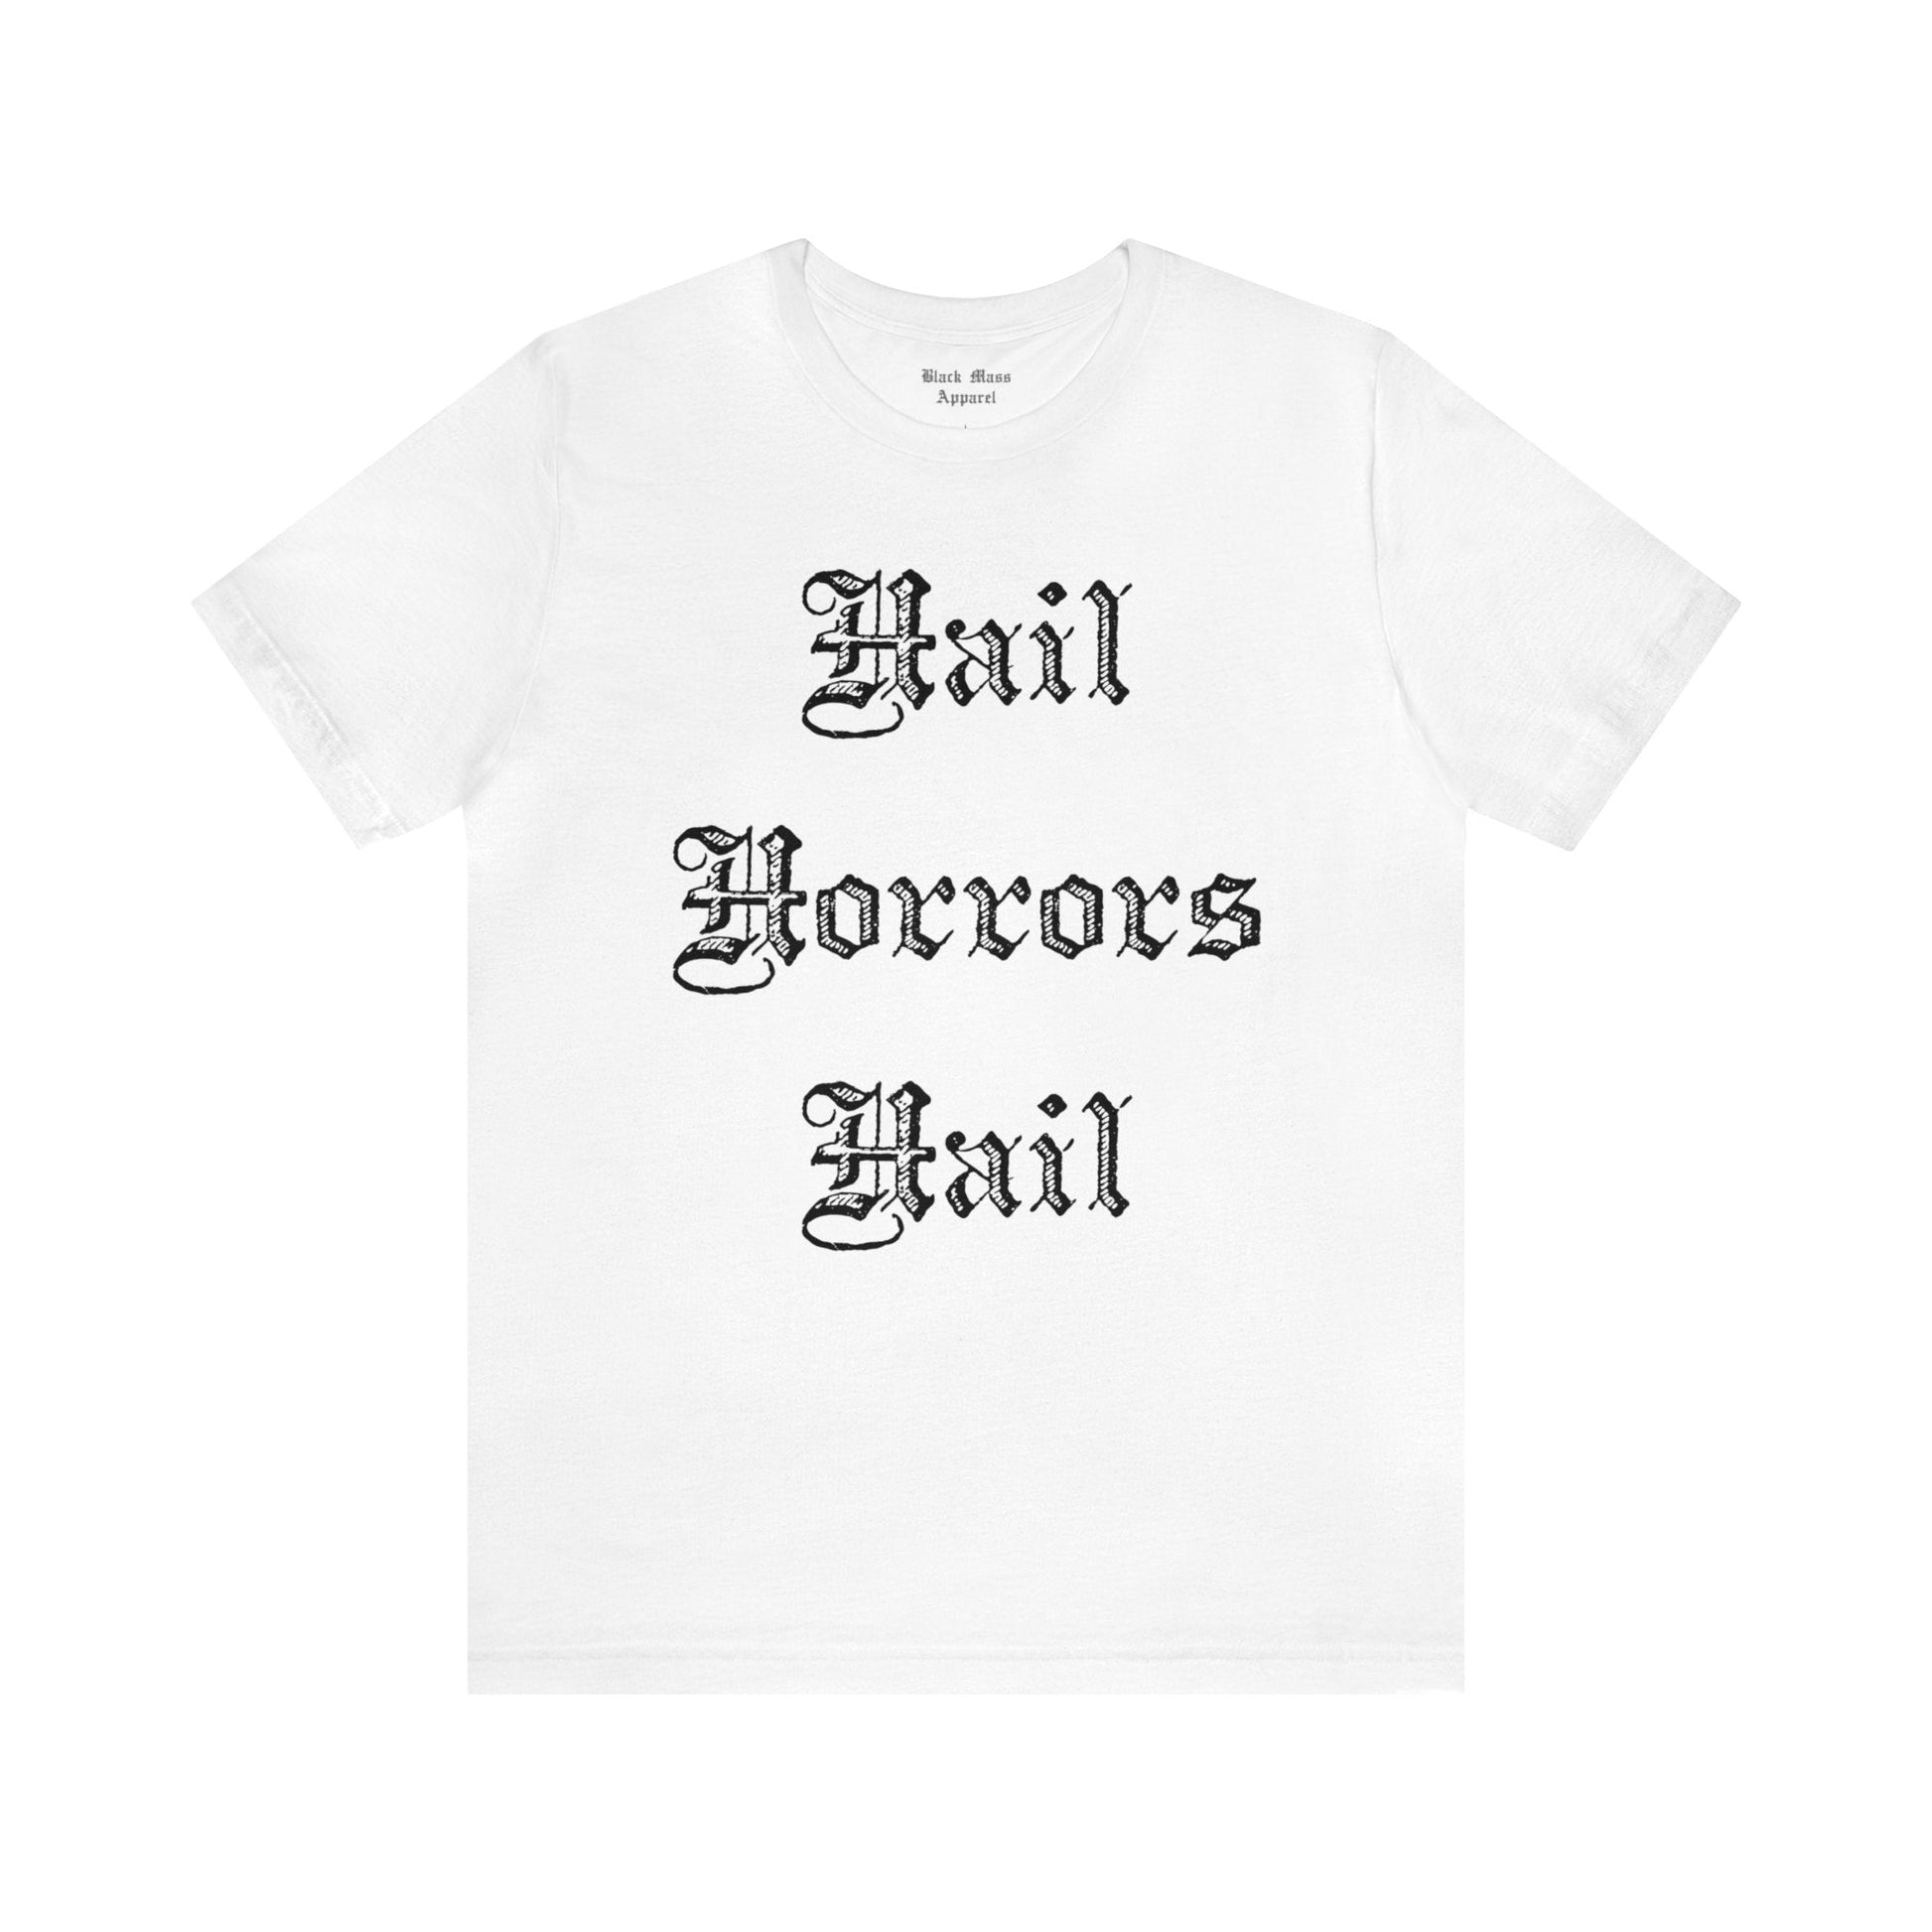 Hail Horrors Hail - Black Mass Apparel - T-Shirt